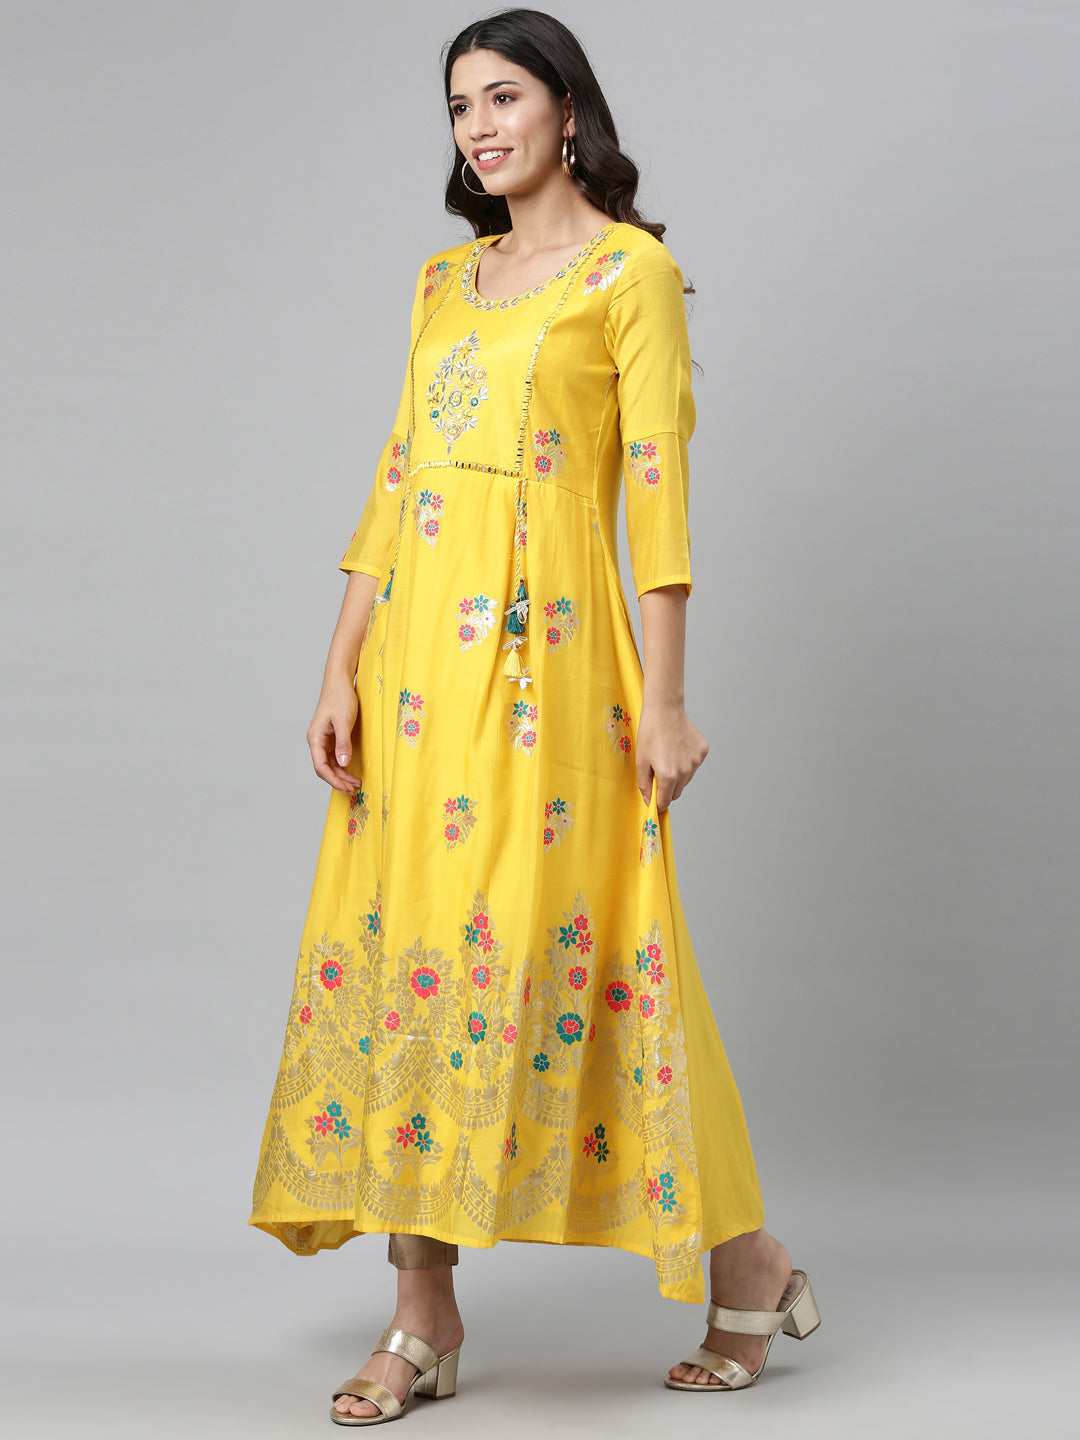 Neeru's Yellow Colour Dress Chanderi Fabric Kurta